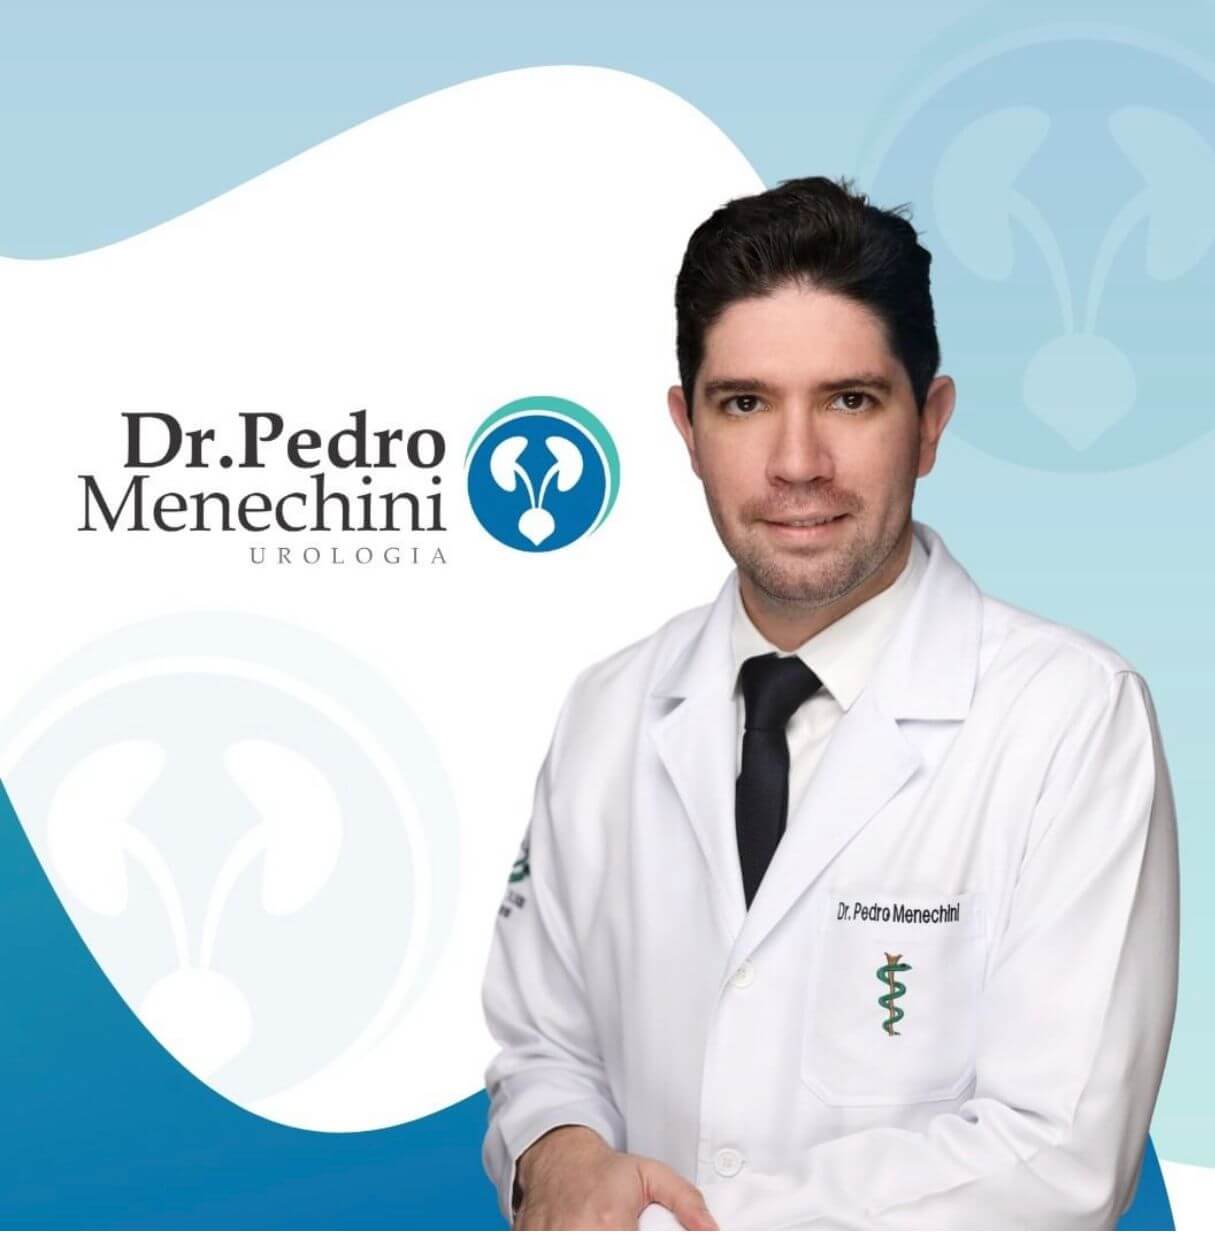 Dr. Pedro Menechini